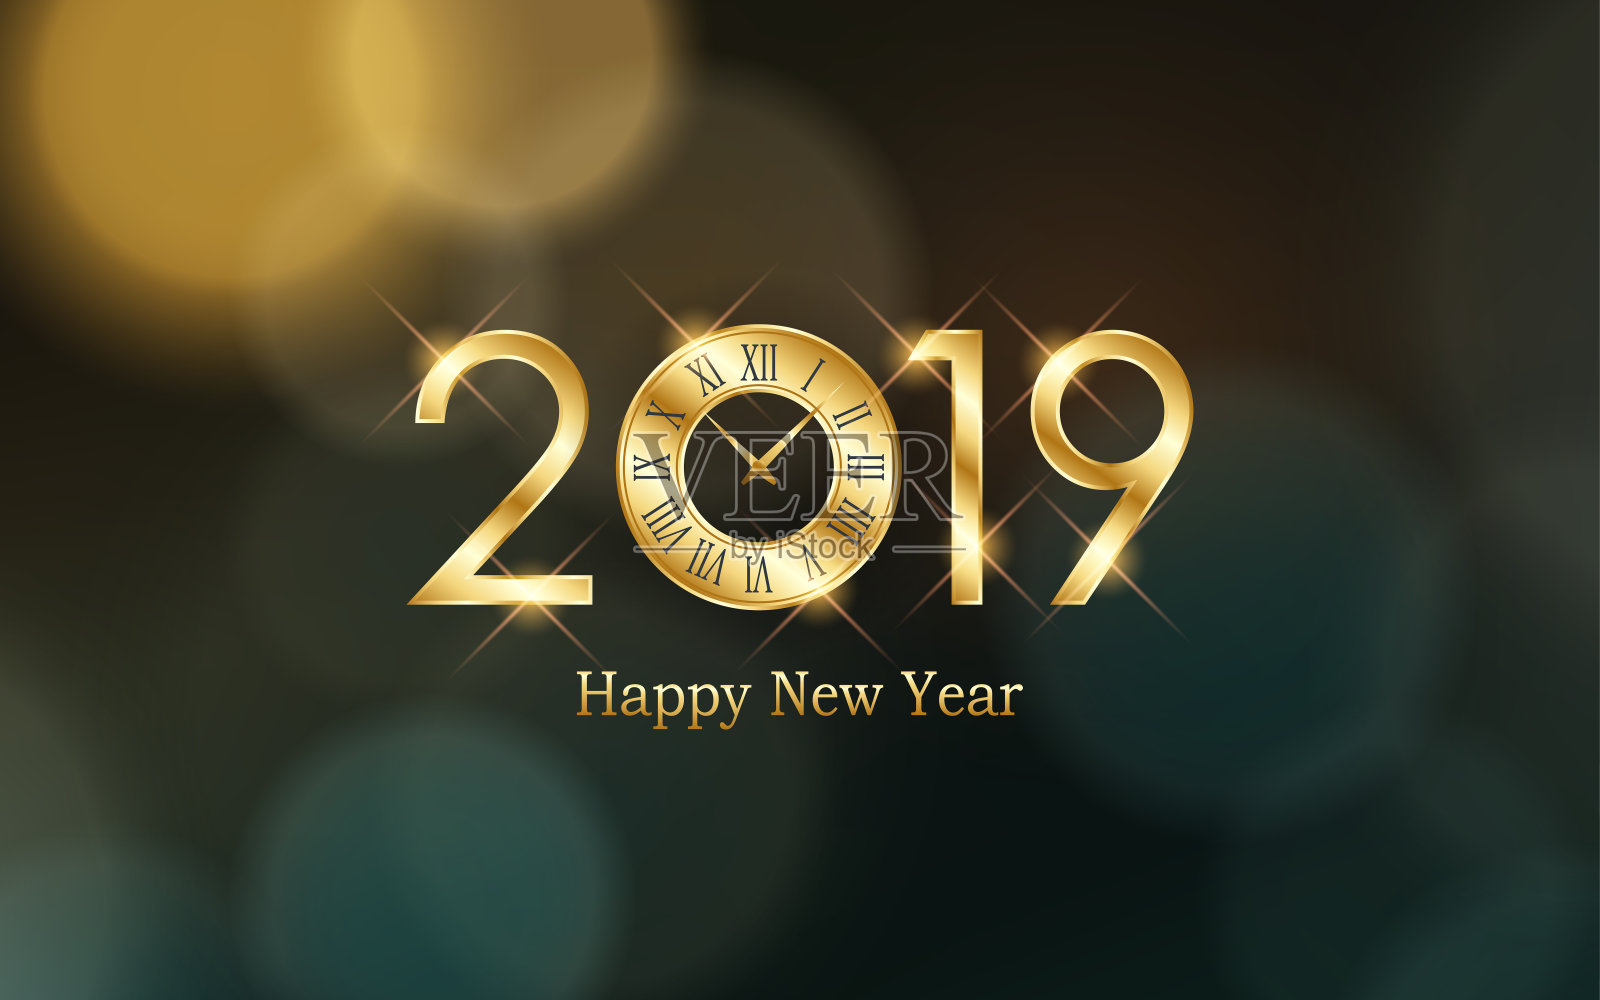 2019年新年快乐，时钟与抽象的散景和镜头光晕图案在复古色彩风格的背景设计模板素材